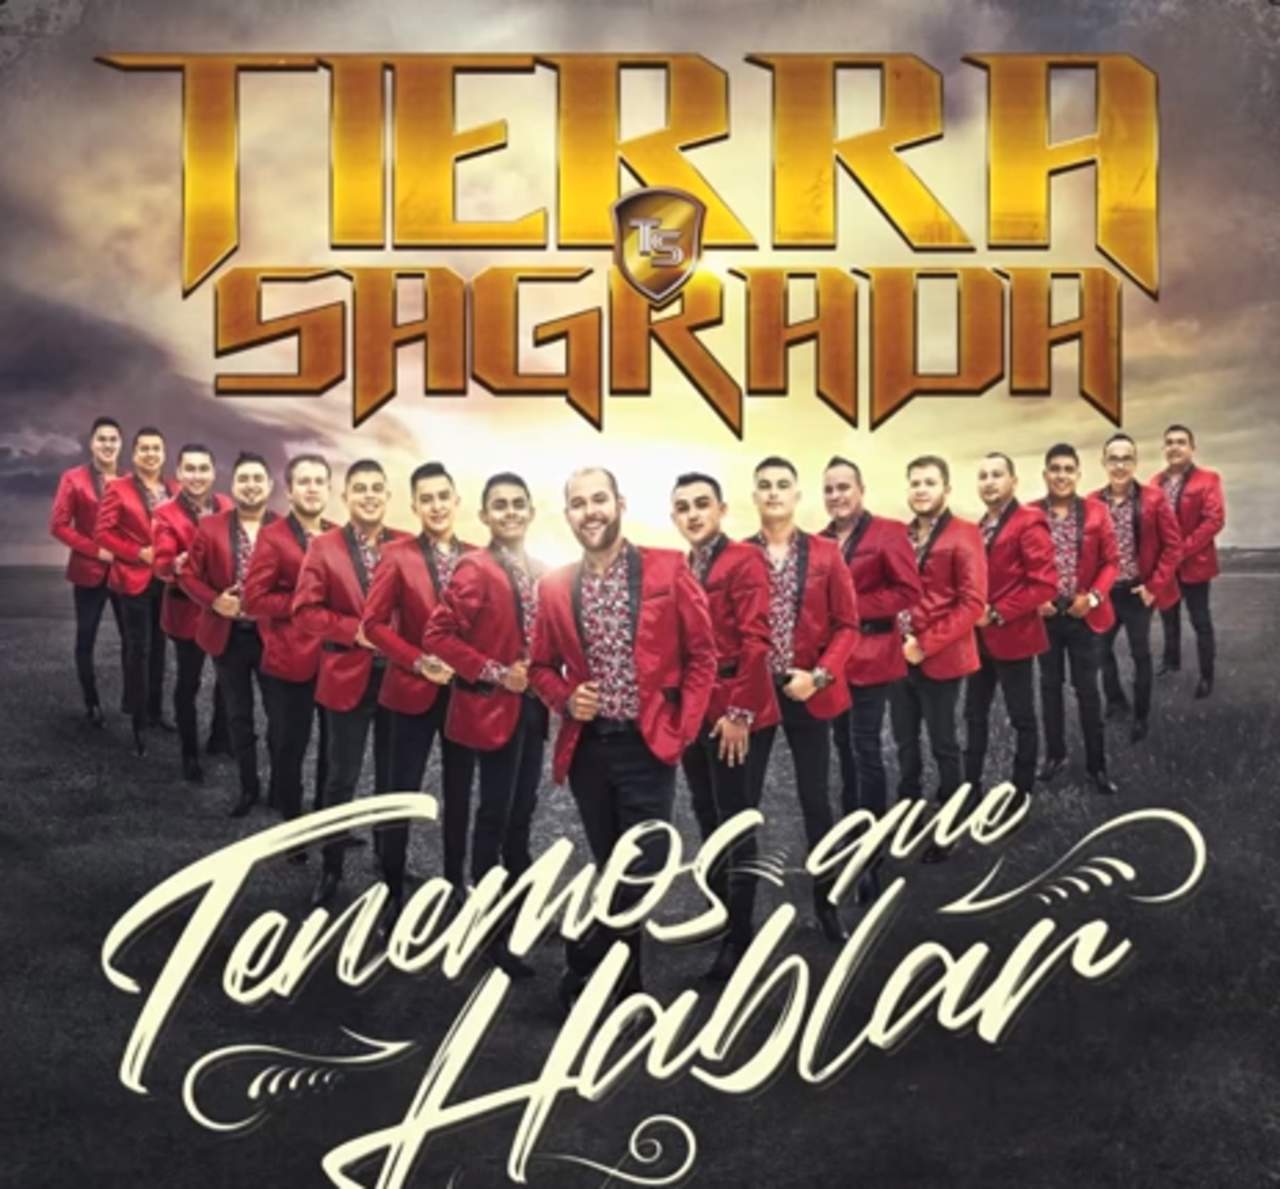 La Banda Tierra Sagrada promociona su sencillo 'Tenemos que hablar', interpretada por la juvenil voz de su nuevo vocalista Juan Pablo. (ESPECIAL)